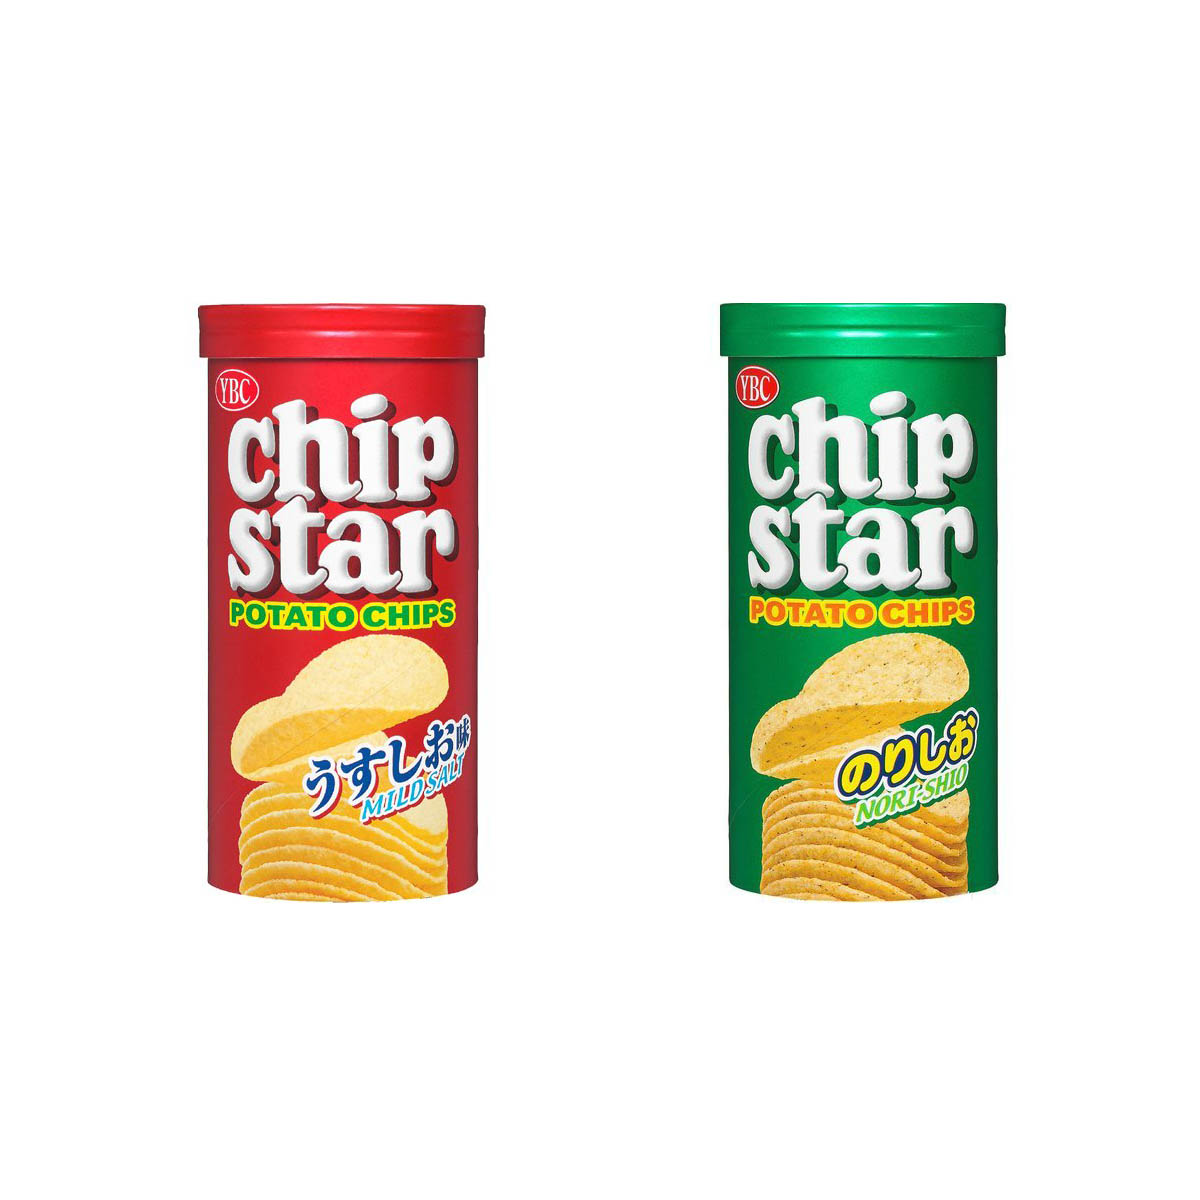 Chip Star 洋芋片 原味海鹽 海苔 50g-YBC エアリアル 日本進口製造